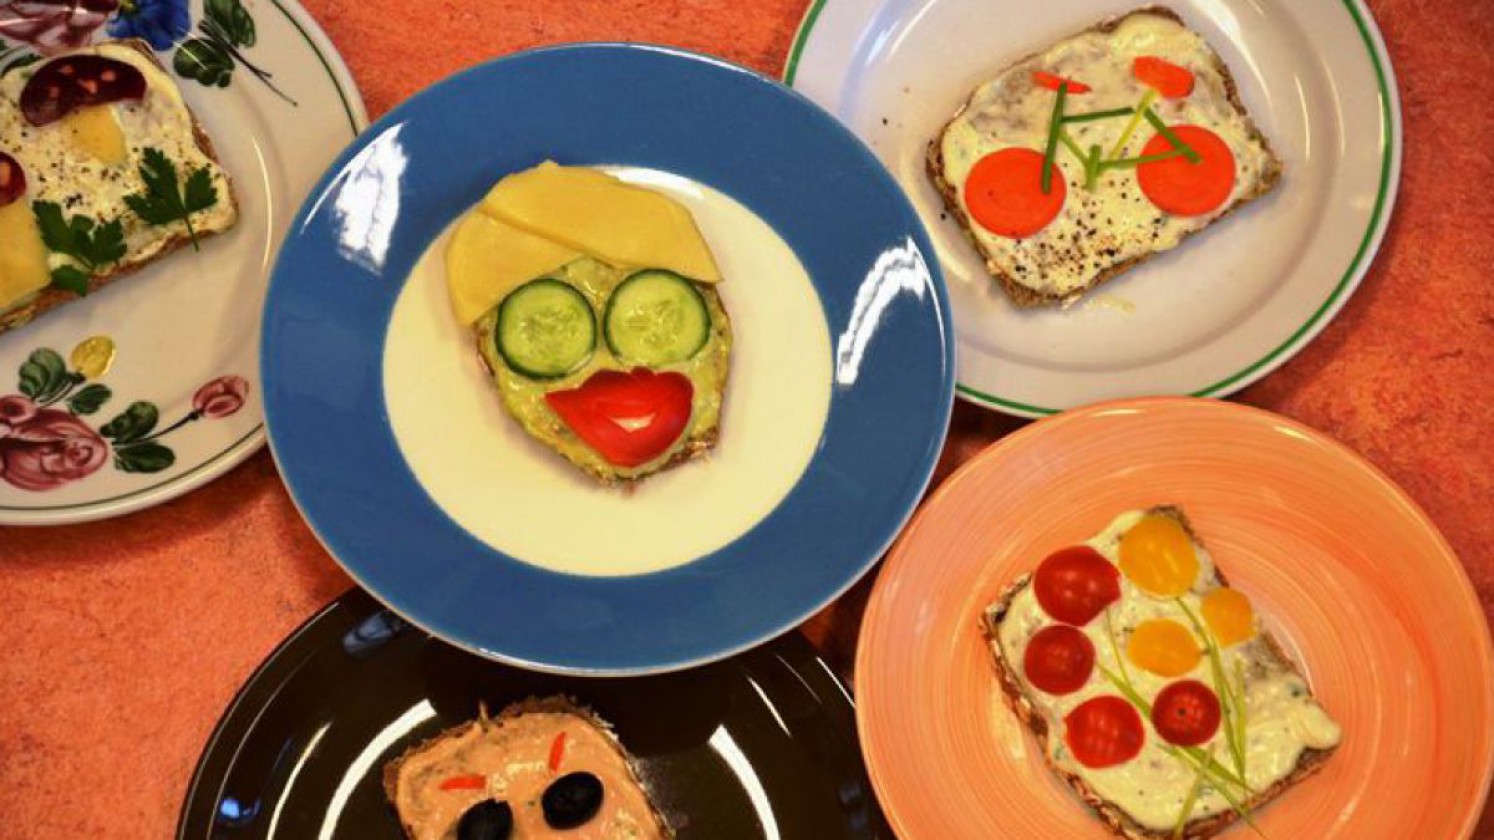 Kreativ belegte Brot für Kinder mit Gesichtern, Fahrrad und Blumenwiese aus Gemüsestücken.